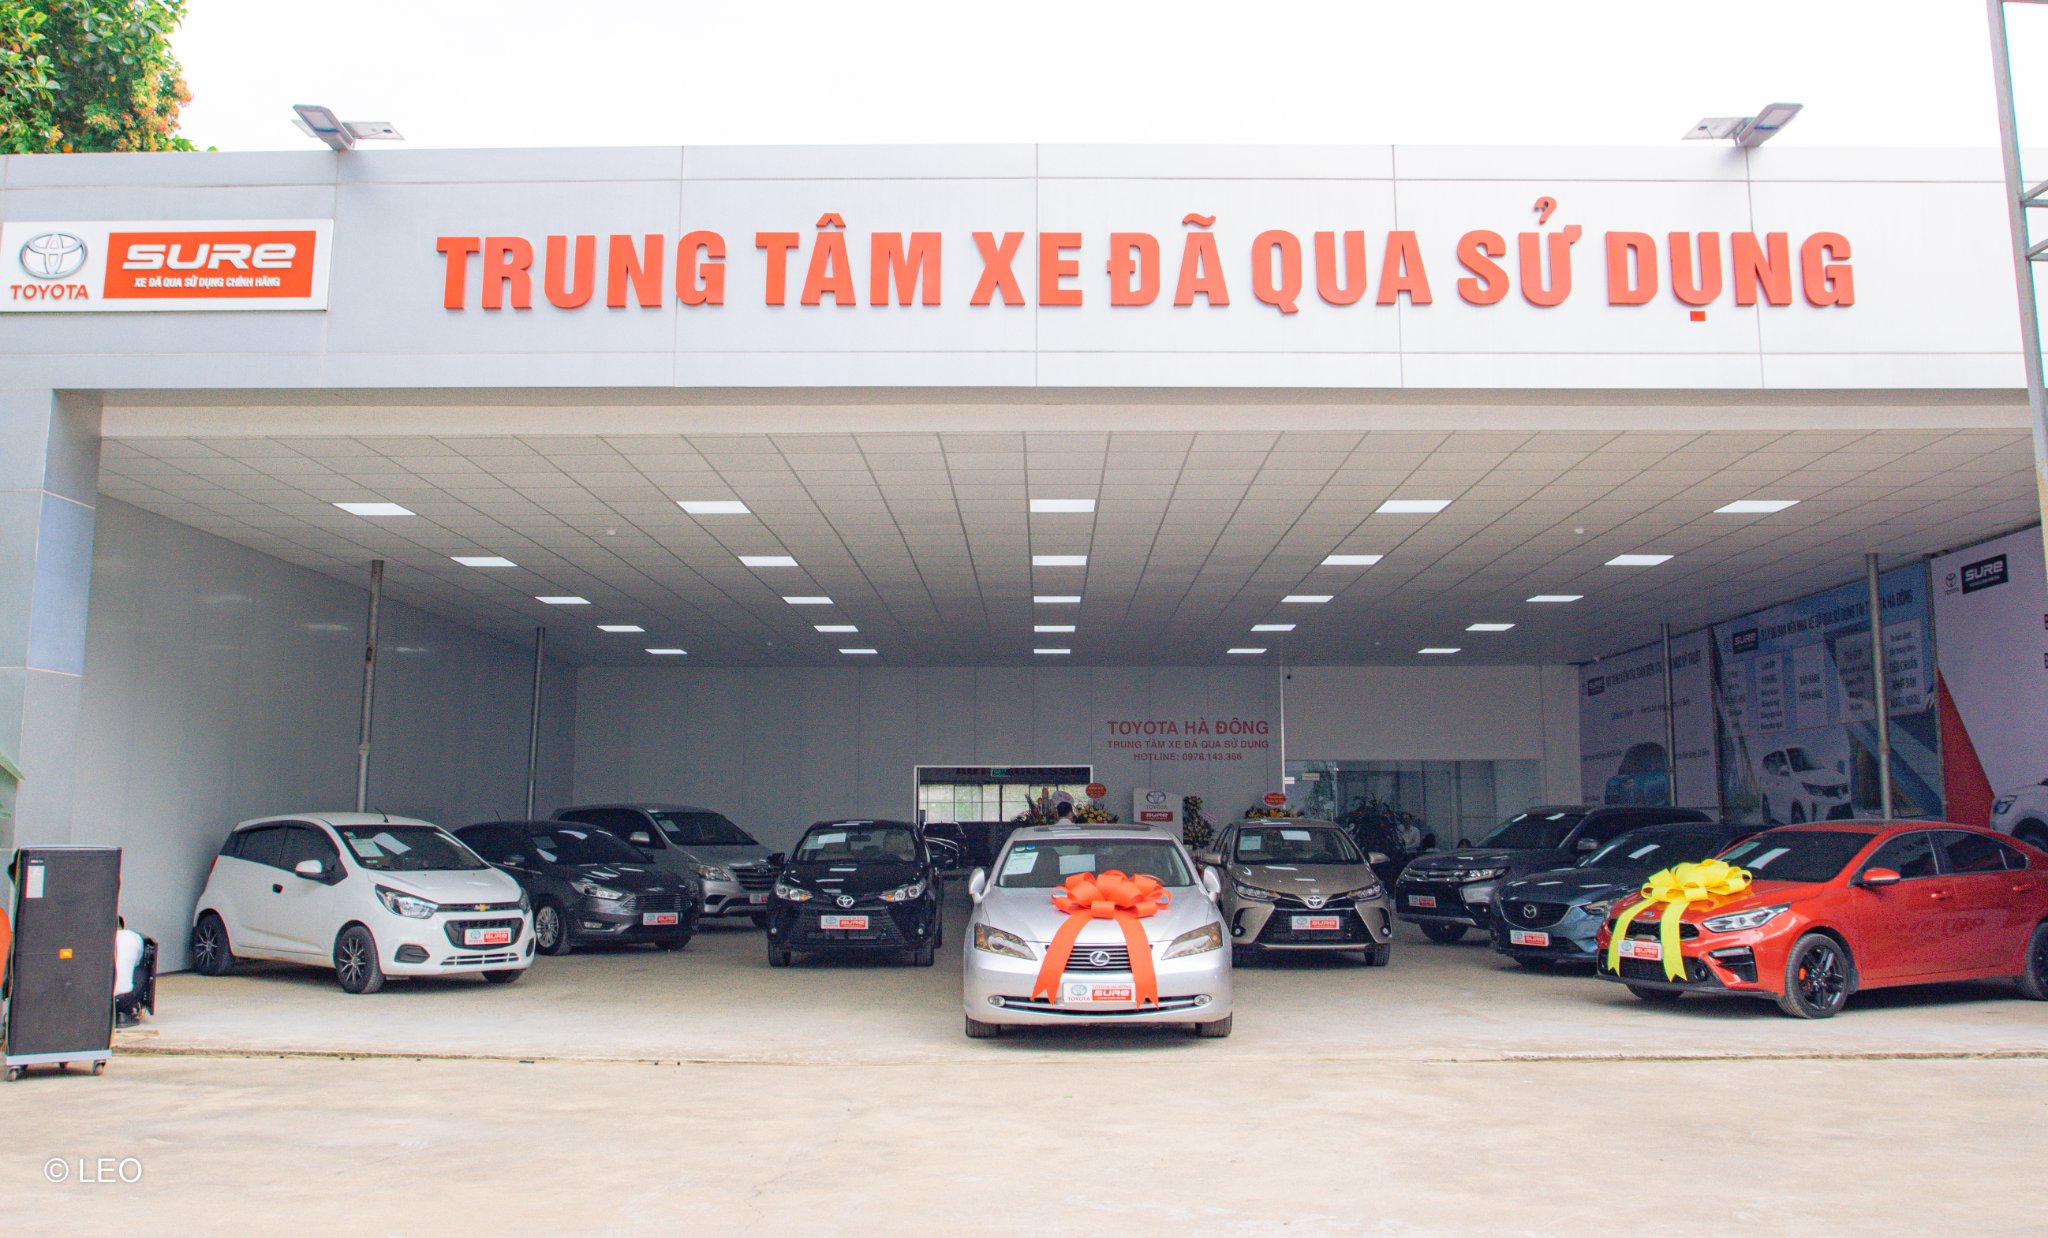 Toyota Sure Hà Đông  Home  Facebook